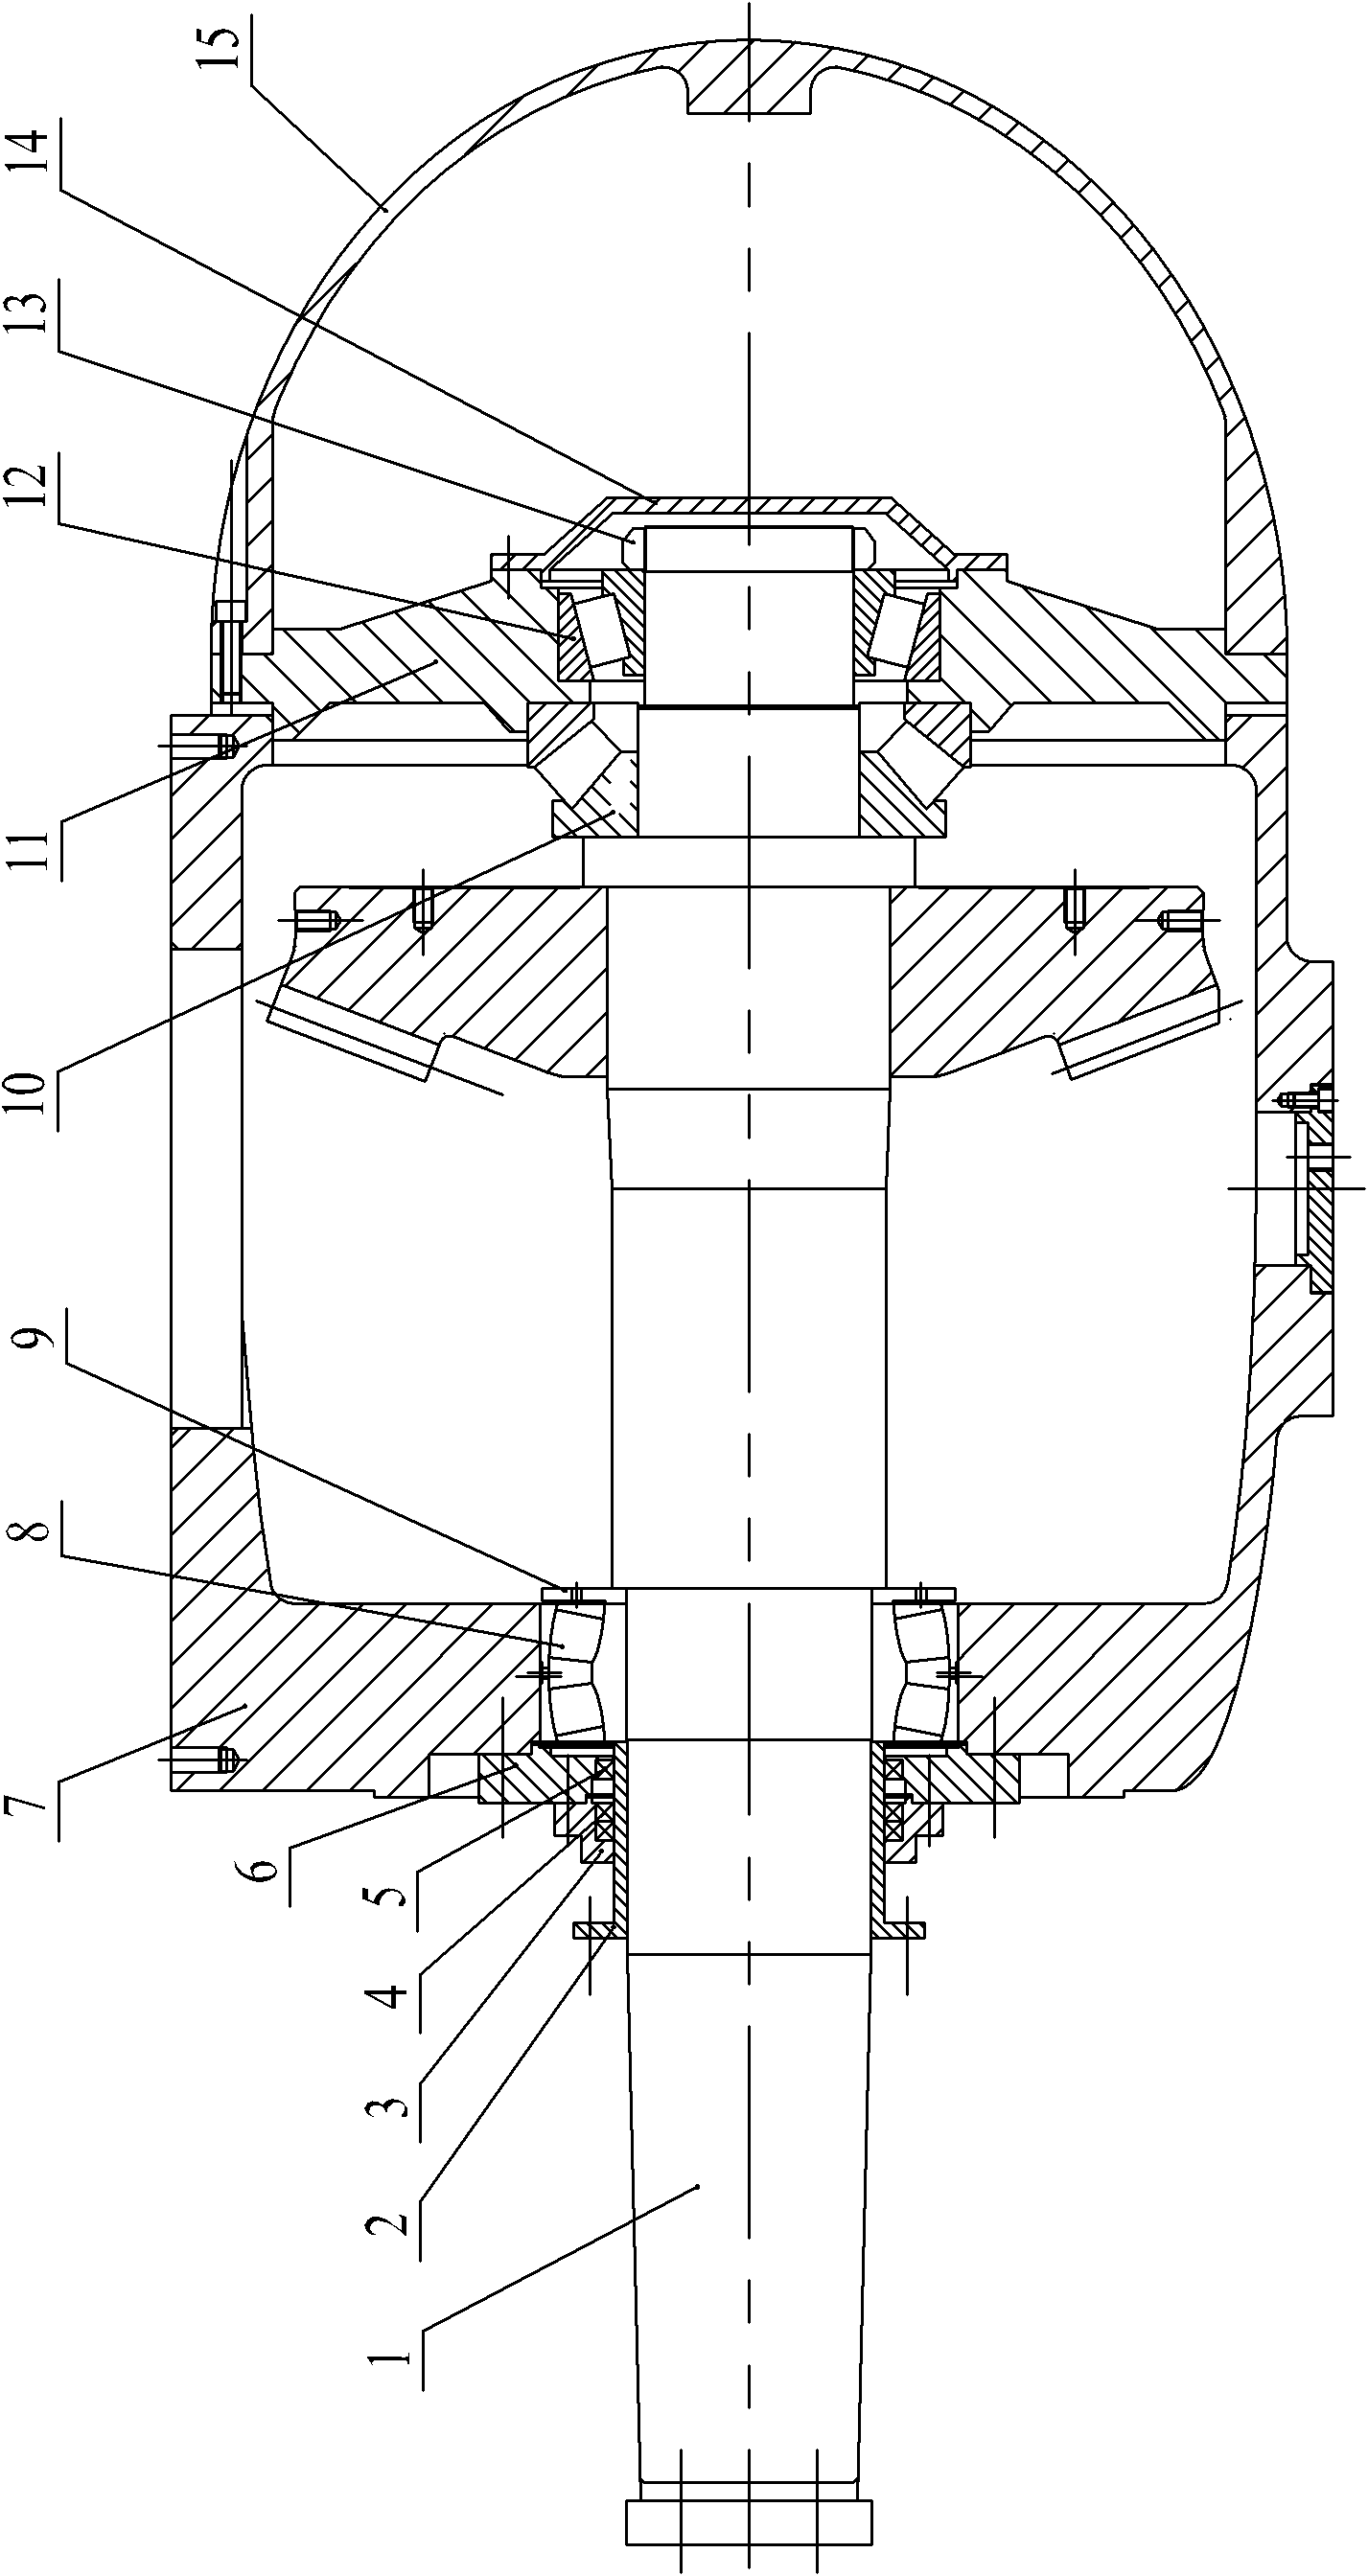 Propeller shaft seal installation structure of full-rotation steering oar